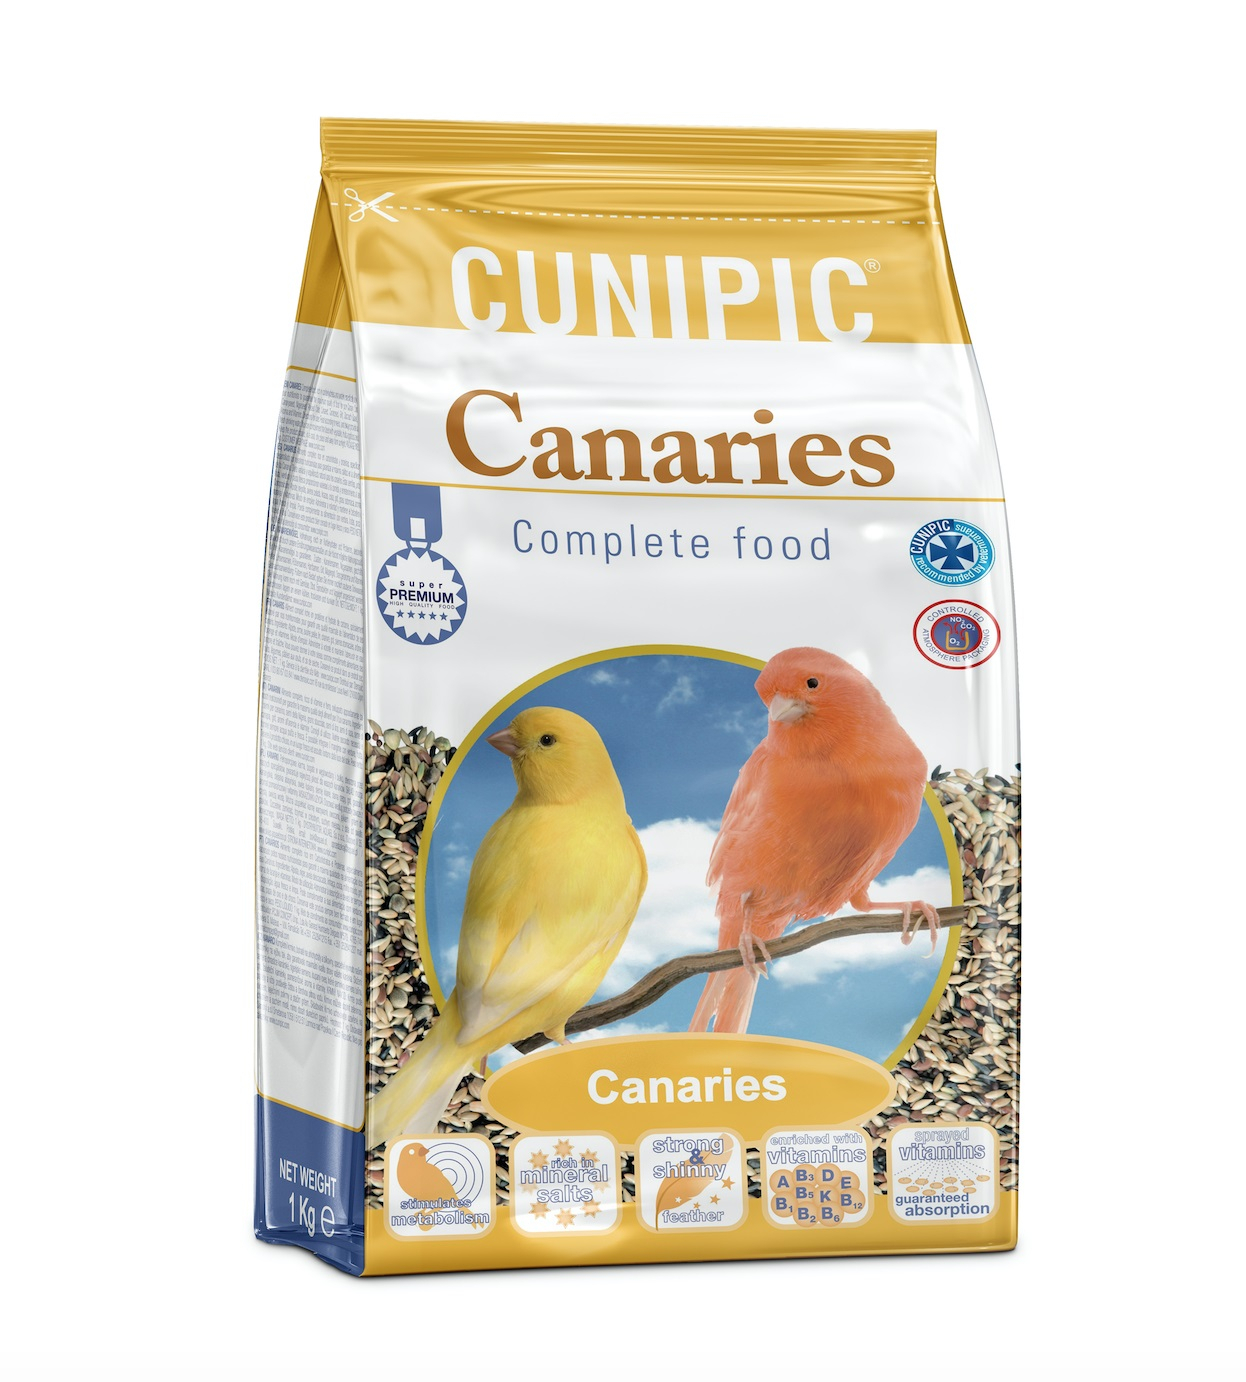 Cunipic Premium compleet kanarievoer